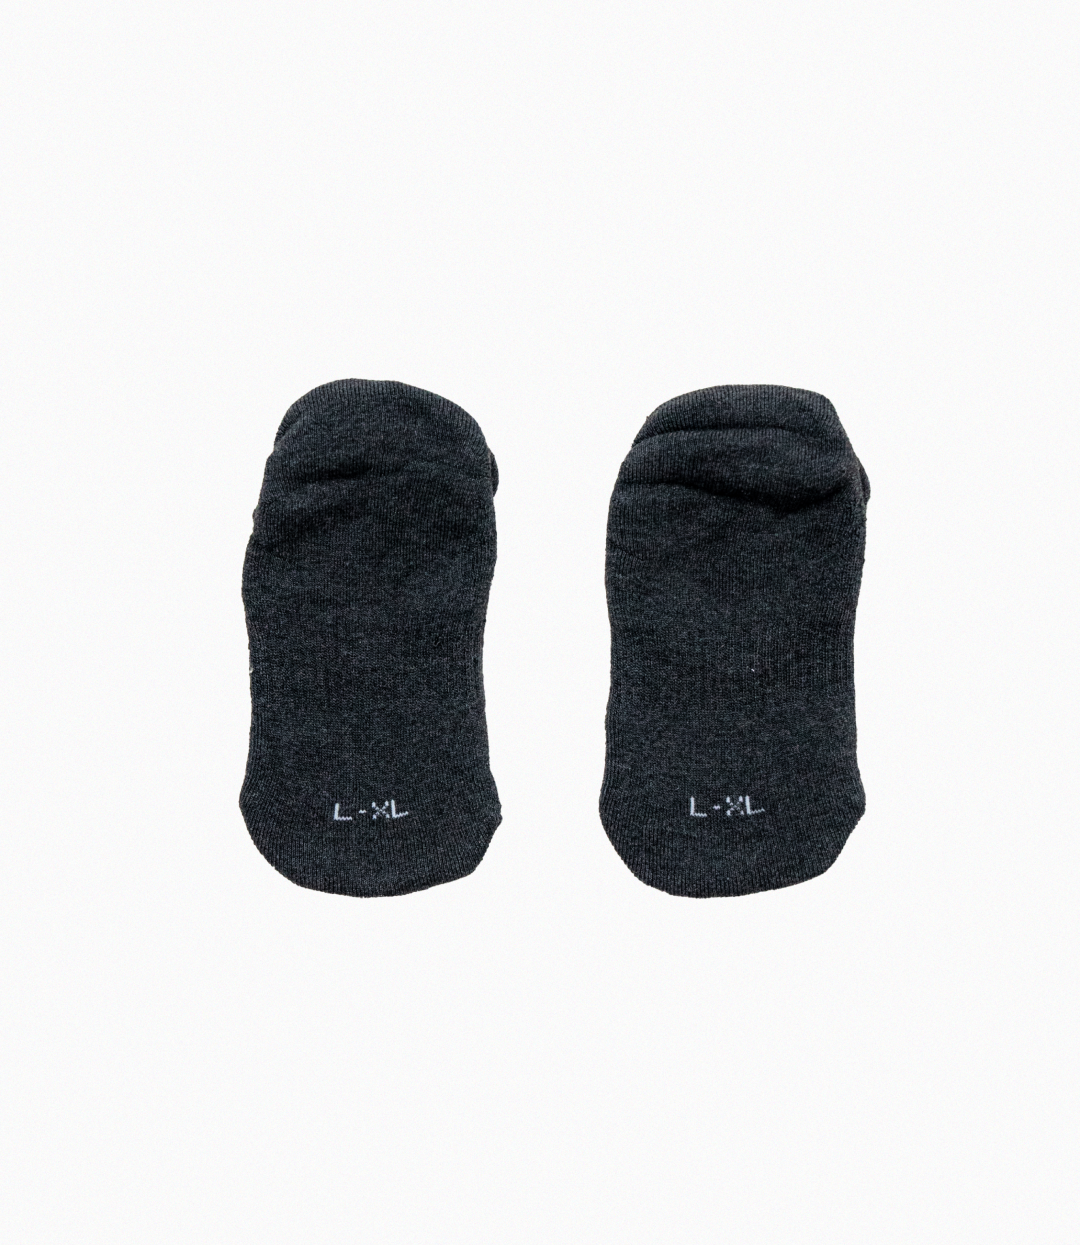 Just Better | Low Cut Socks